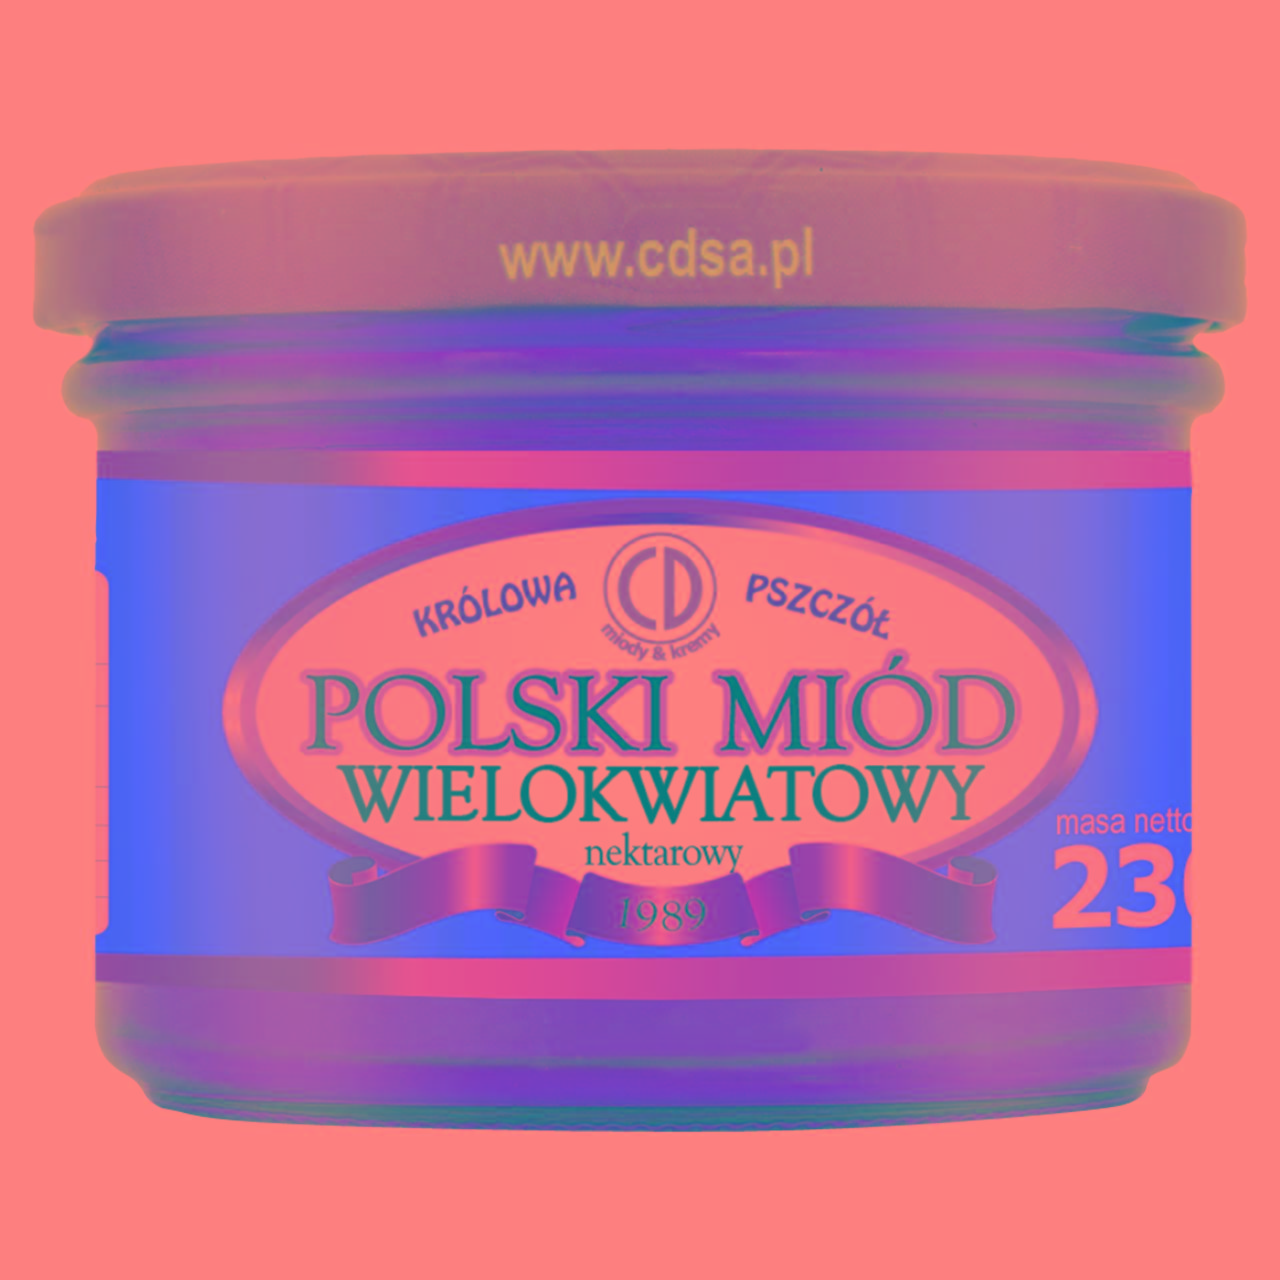 Zdjęcia - Królowa Pszczół Polski miód wielokwiatowy nektarowy 230 g